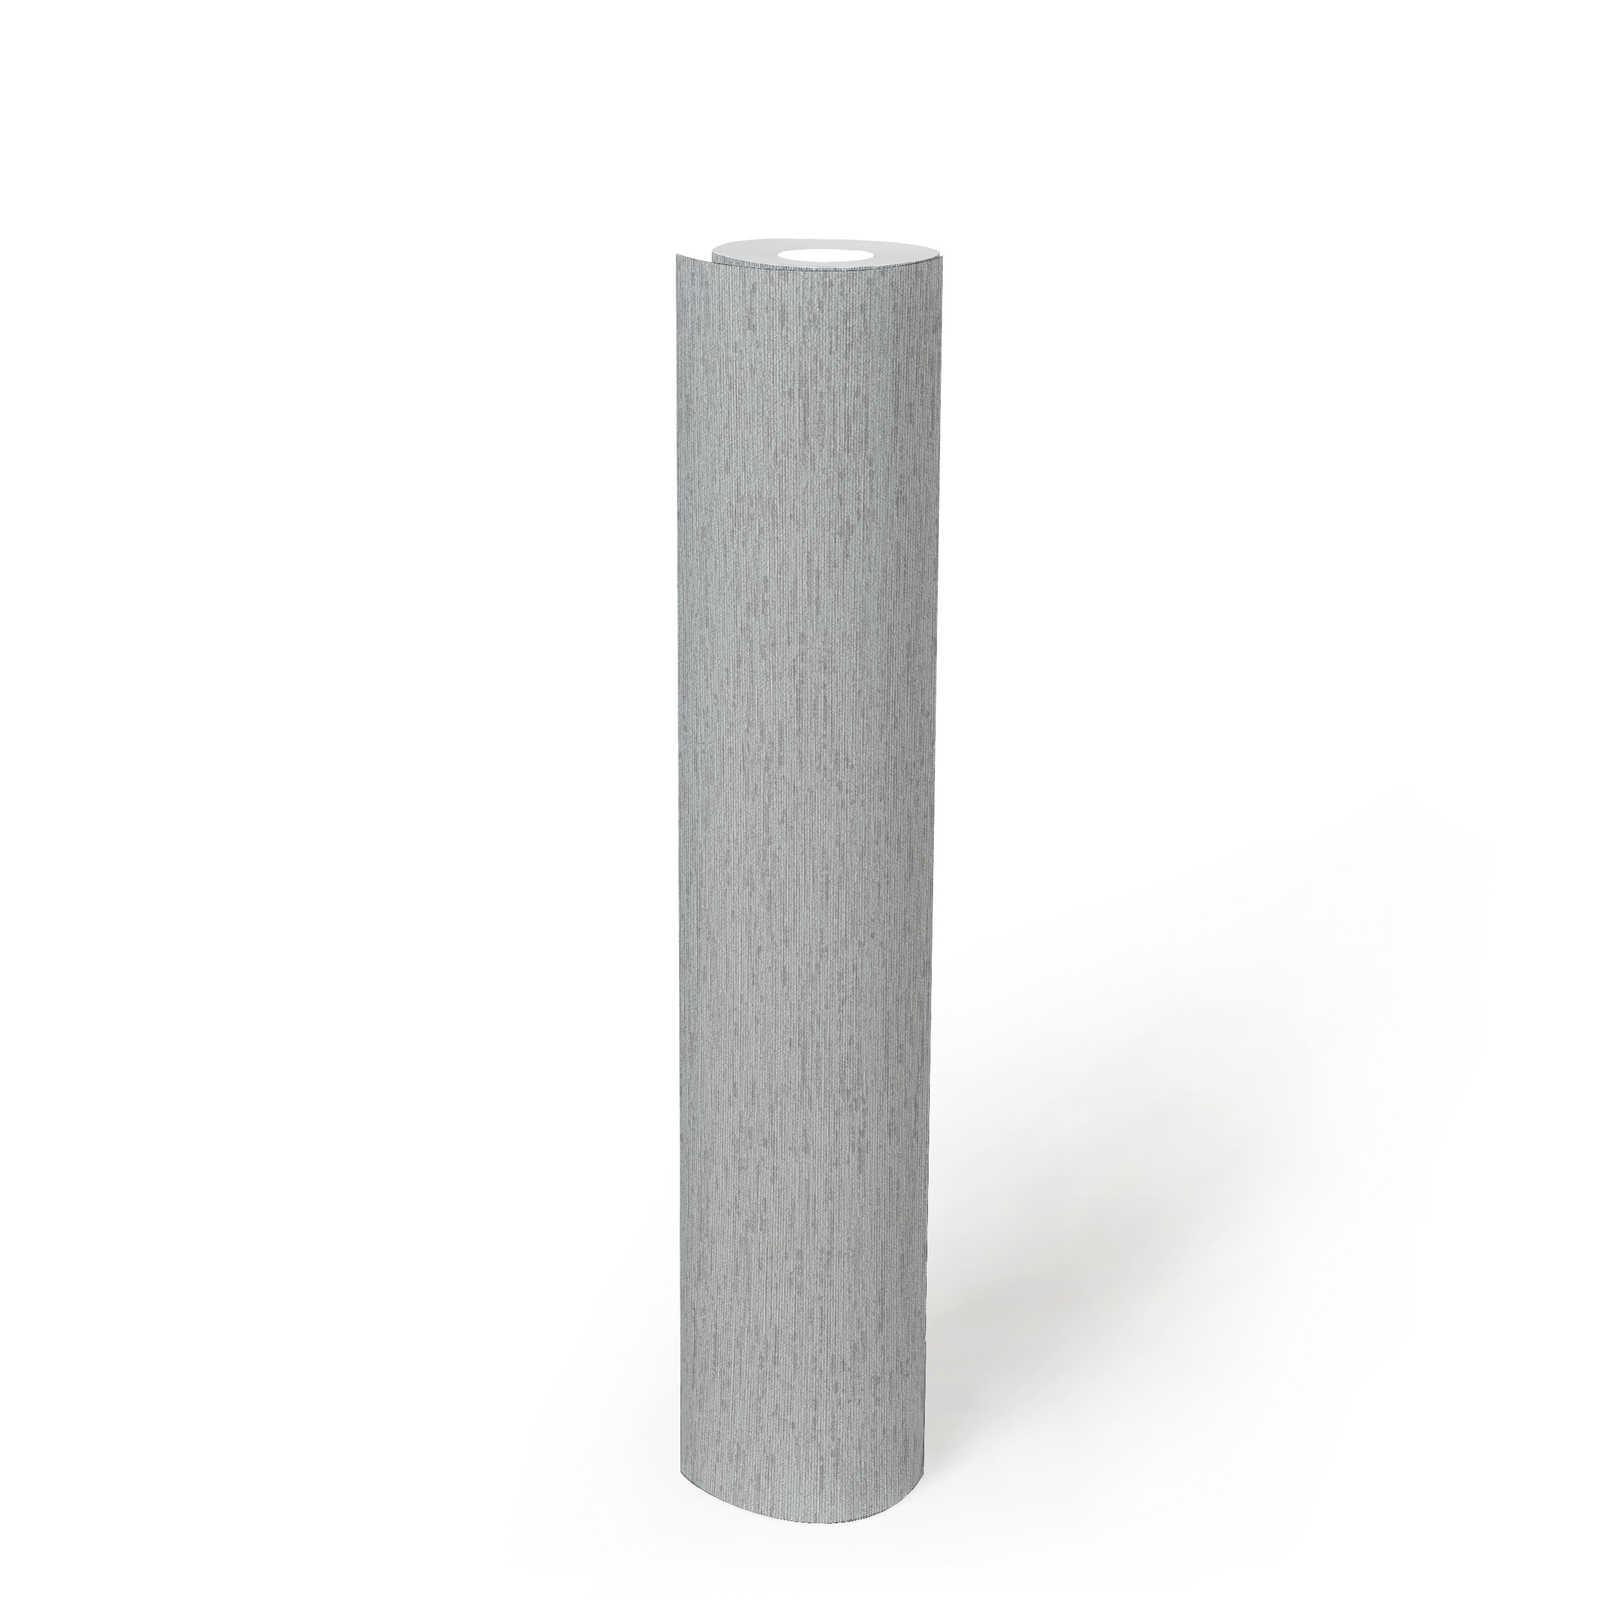             Einfarbige Vliestapete in Textil-Optik mit leichter Struktur, matt – Grau, Hellgrau
        